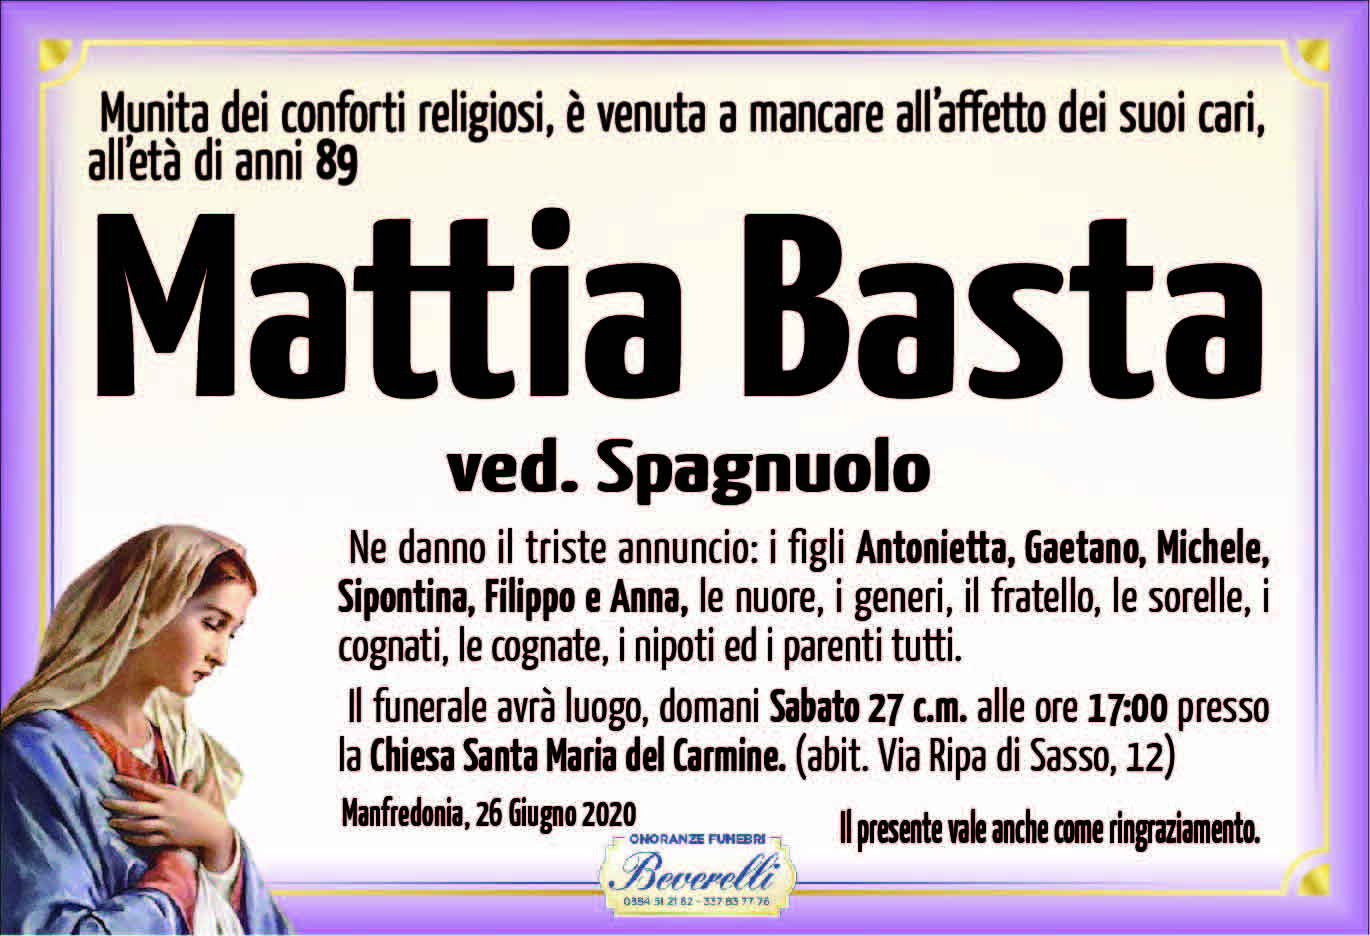 Mattia Basta